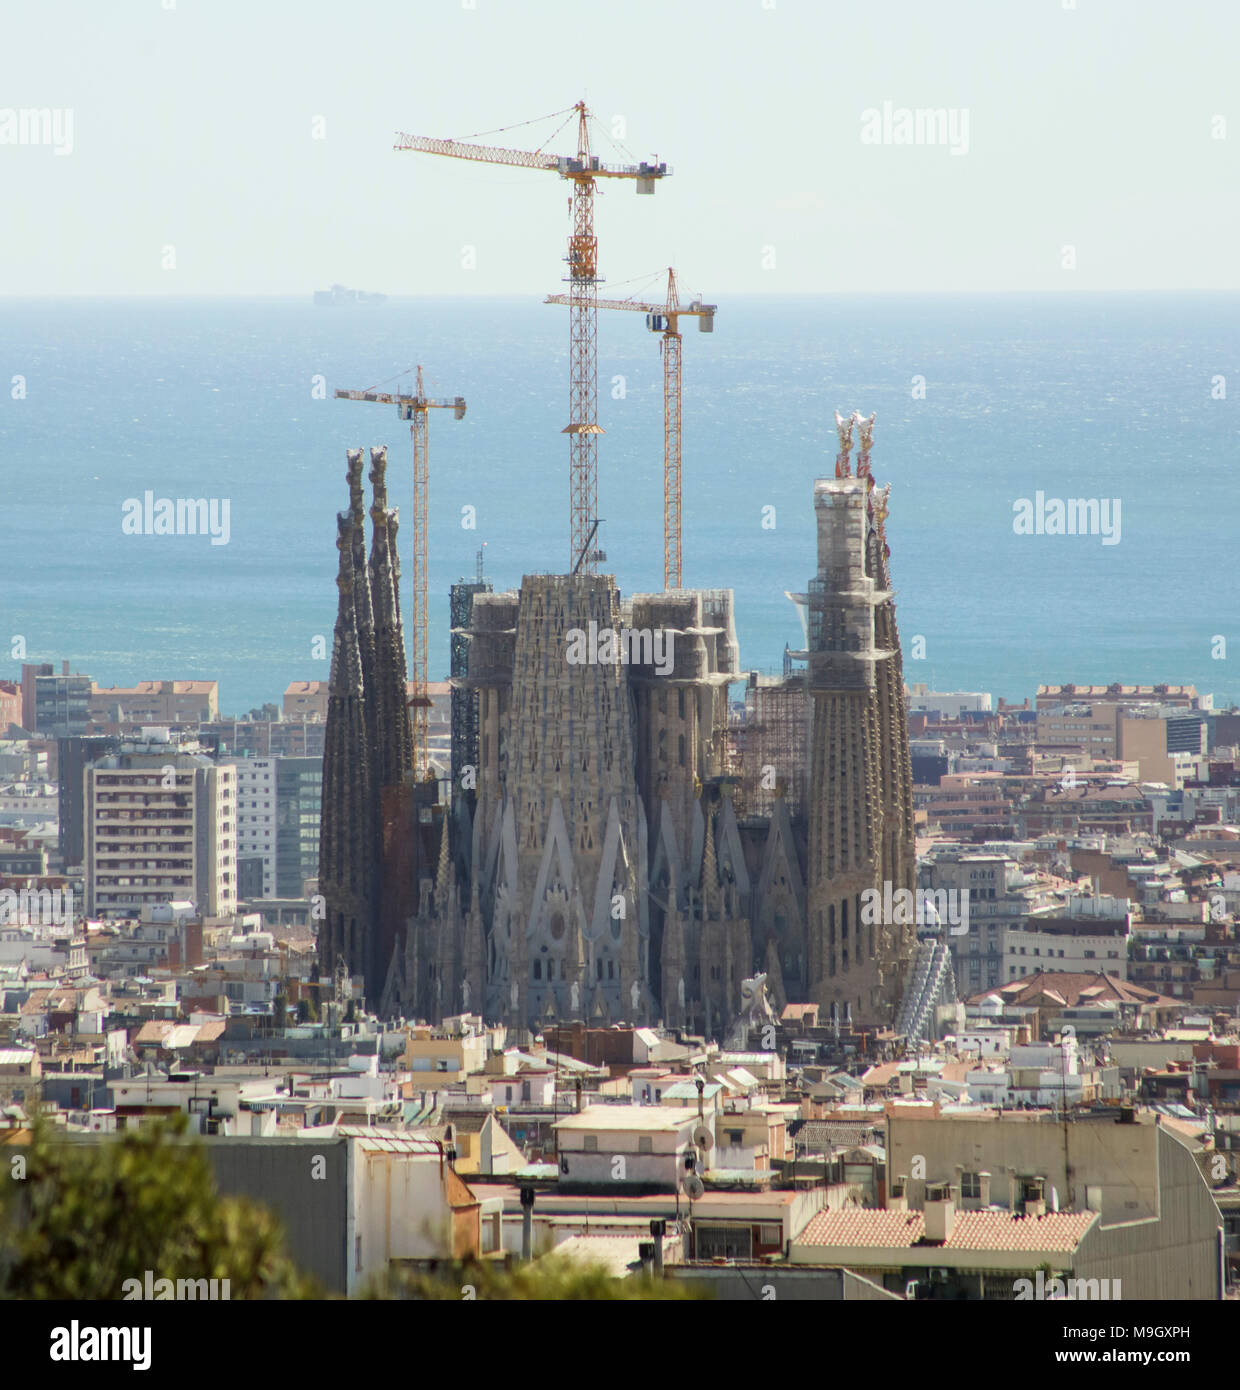 Die Sagrada Familia, der berühmten spanischen Architekten Antoni Gaudi" konzipiert sind, ist eine große Attraktion in Barcelona, Spanien. Stockfoto